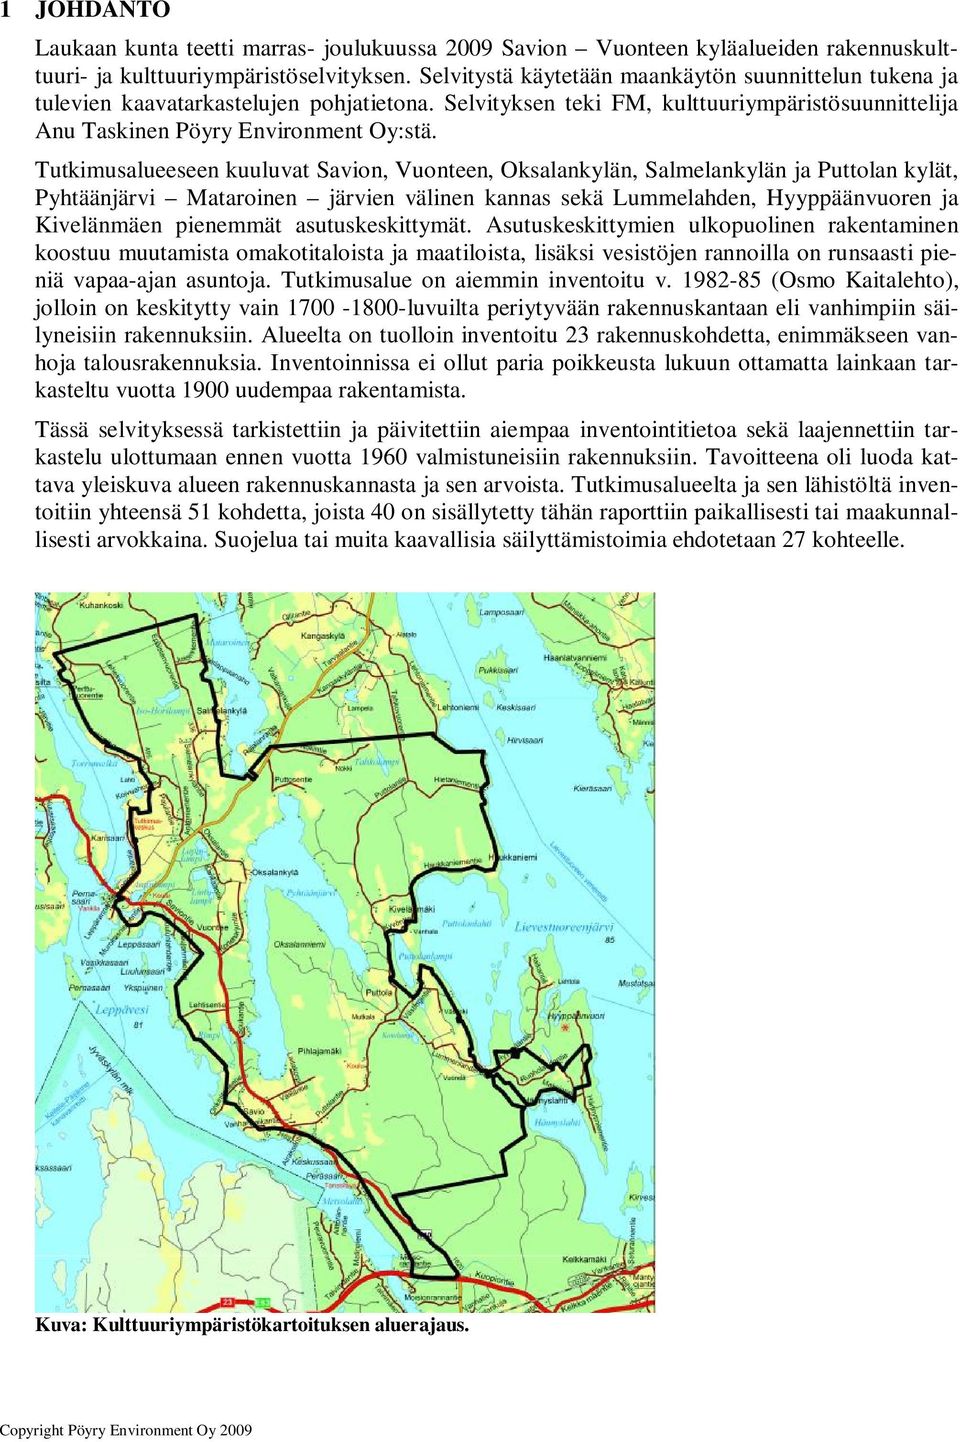 Tutkimusalueeseen kuuluvat Savion, Vuonteen, Oksalankylän, Salmelankylän ja Puttolan kylät, Pyhtäänjärvi Mataroinen järvien välinen kannas sekä Lummelahden, Hyyppäänvuoren ja Kivelänmäen pienemmät